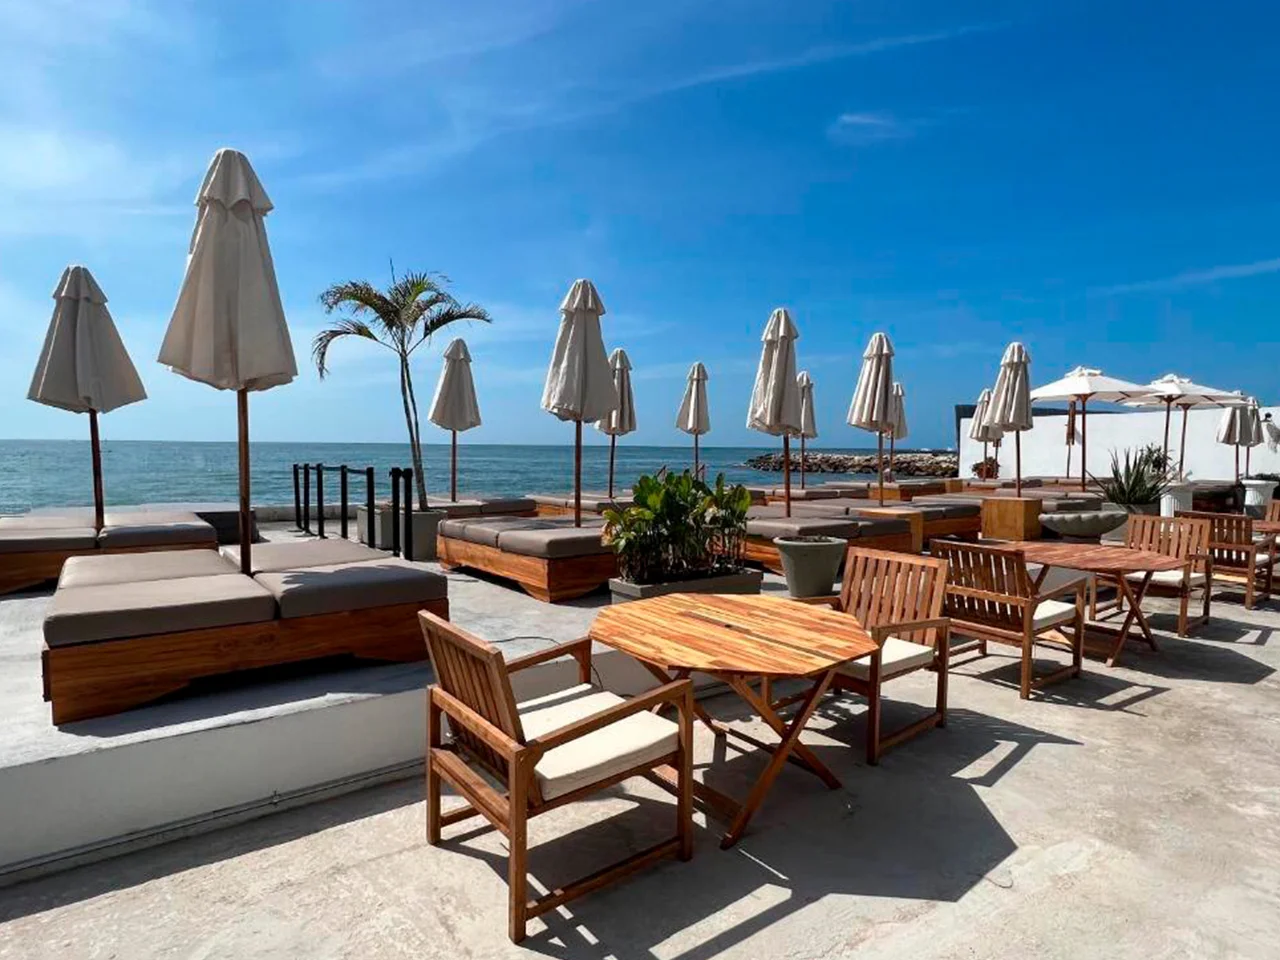 Wala Beach - Classy Cartagena